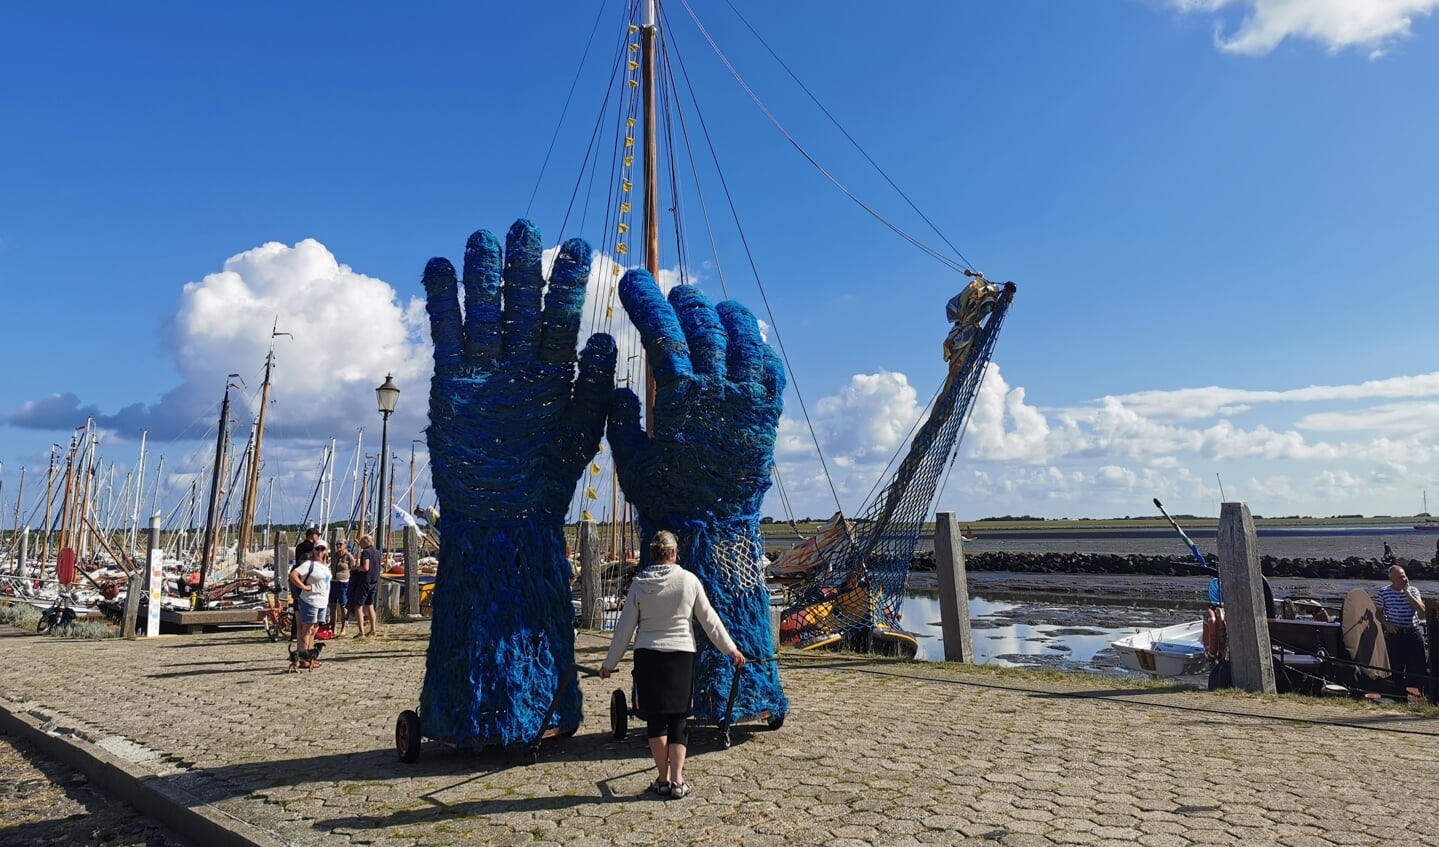 H Aandacht voor vispluis. Vorig jaar zomer was er tour door Nederland. KIMO wil het recyclen stimuleren. (Archieffoto: Rienk Nadema)